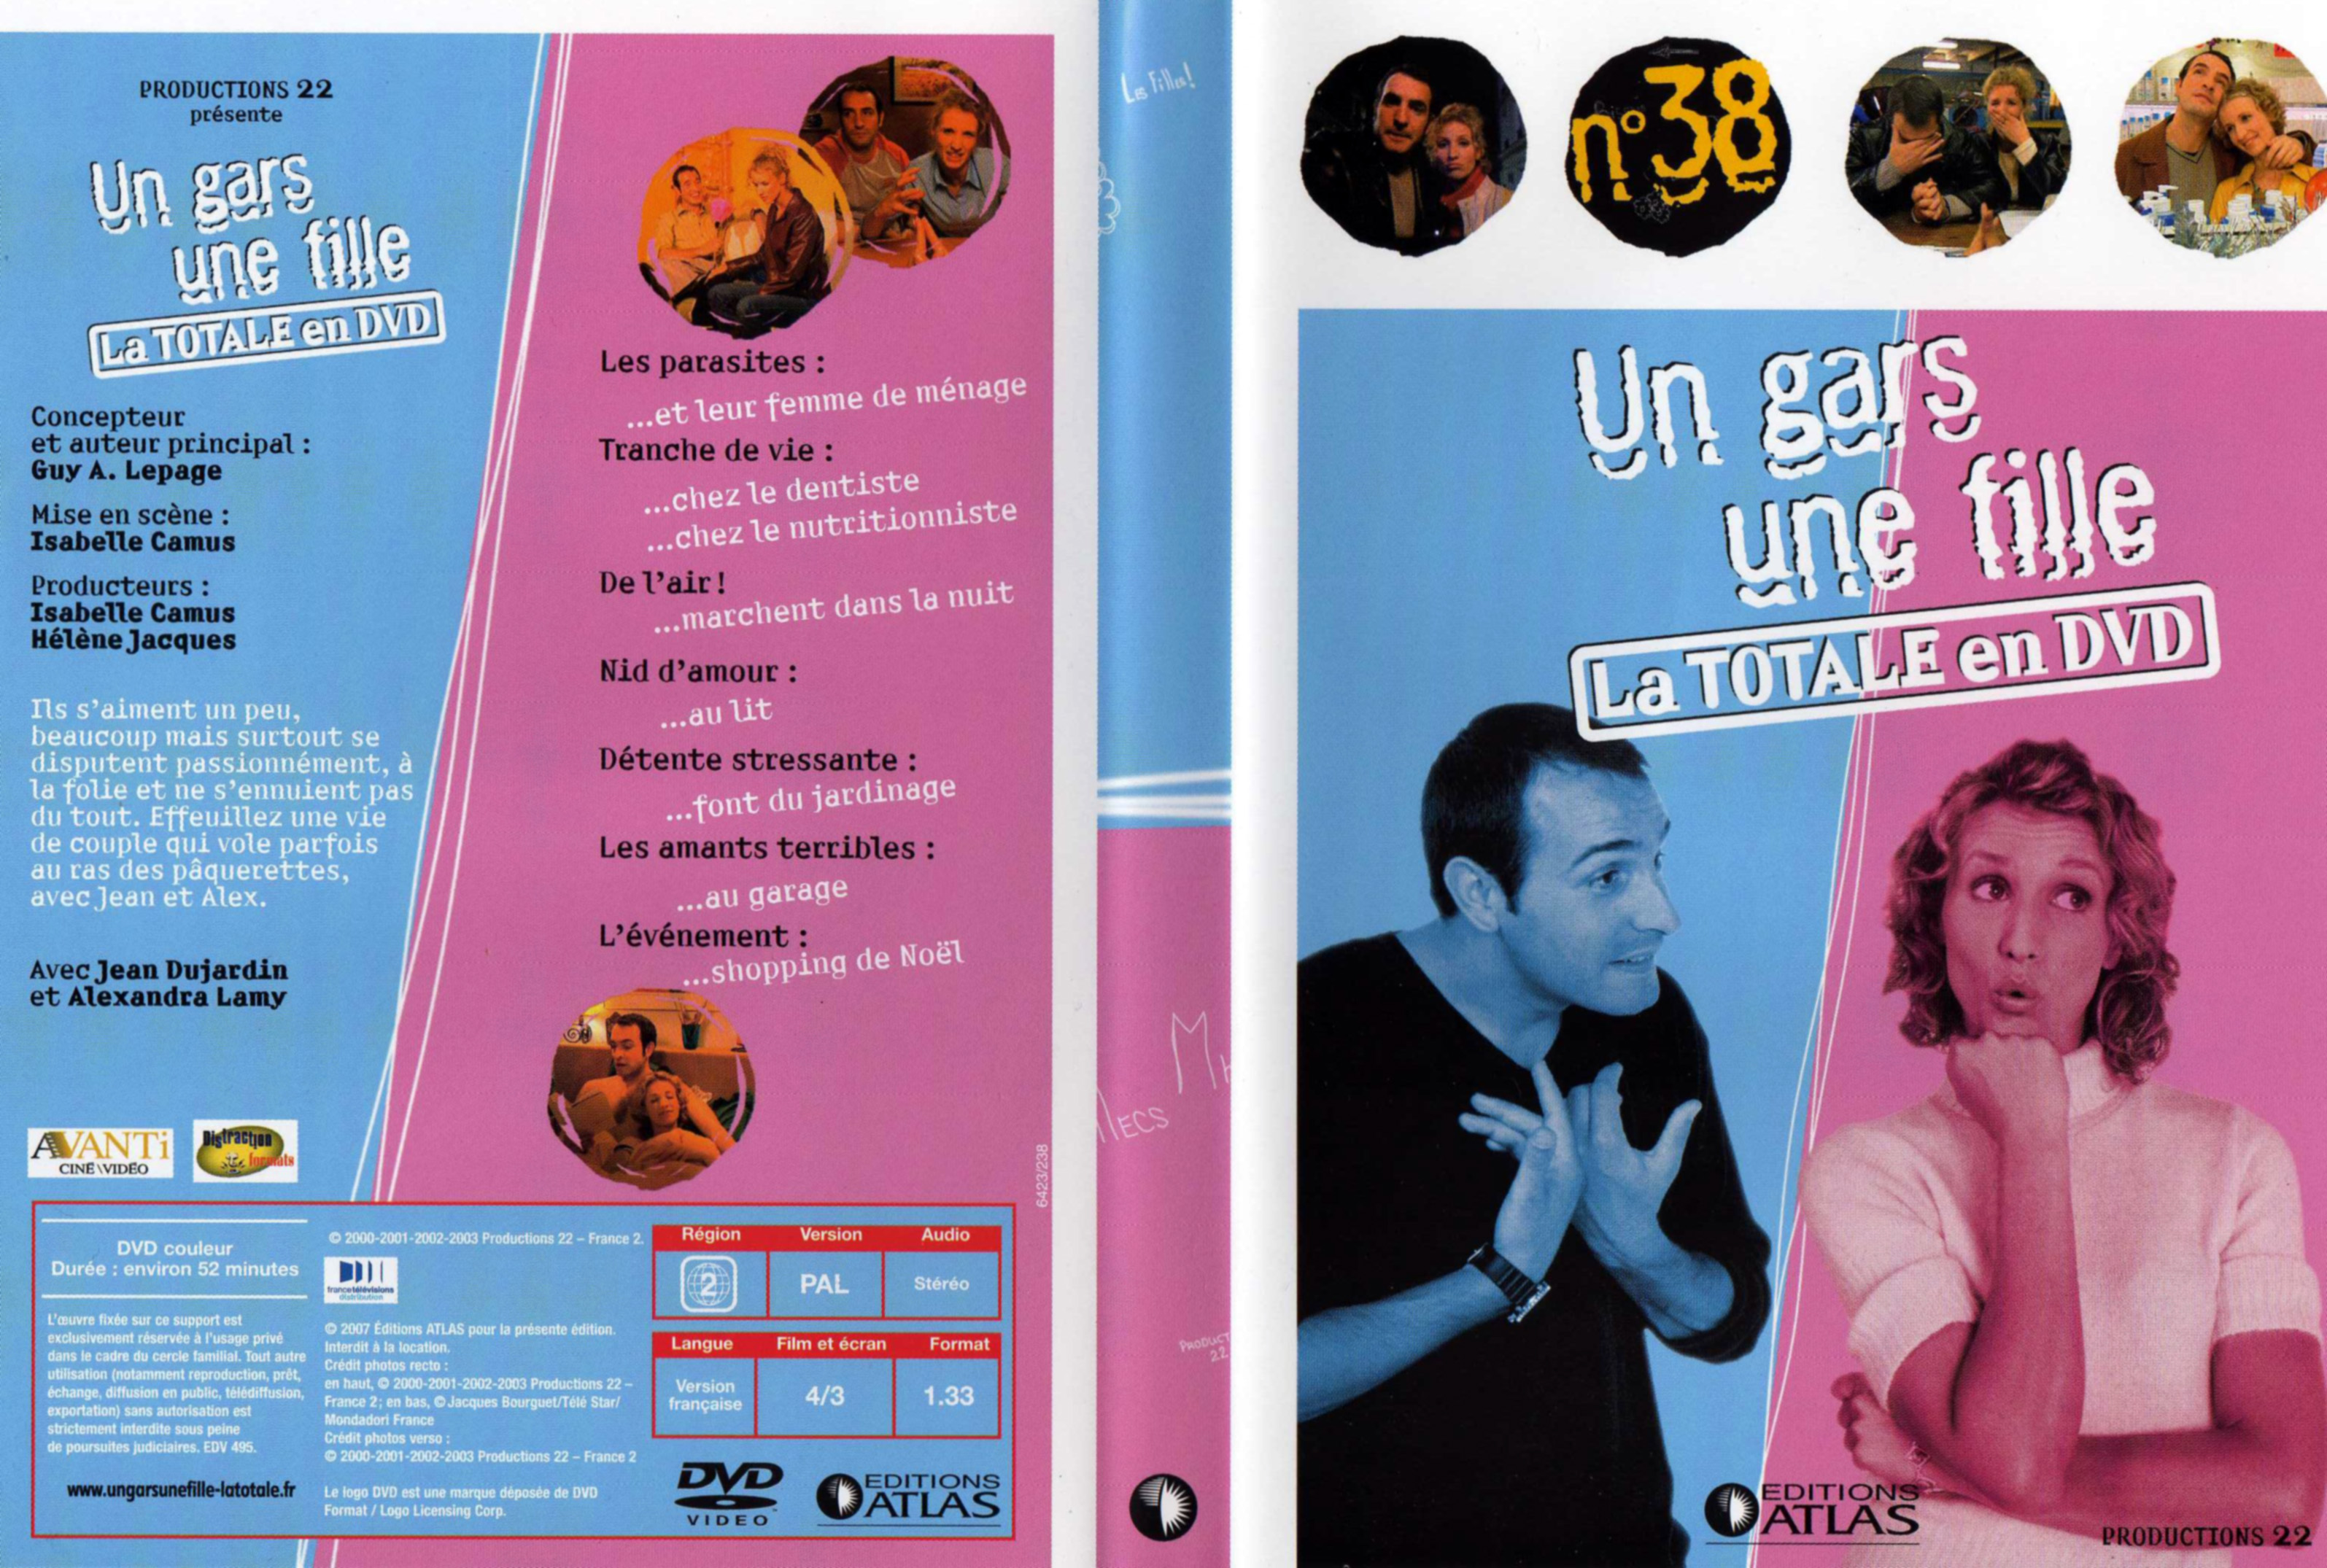 Jaquette DVD Un gars une fille la totale en dvd vol 38